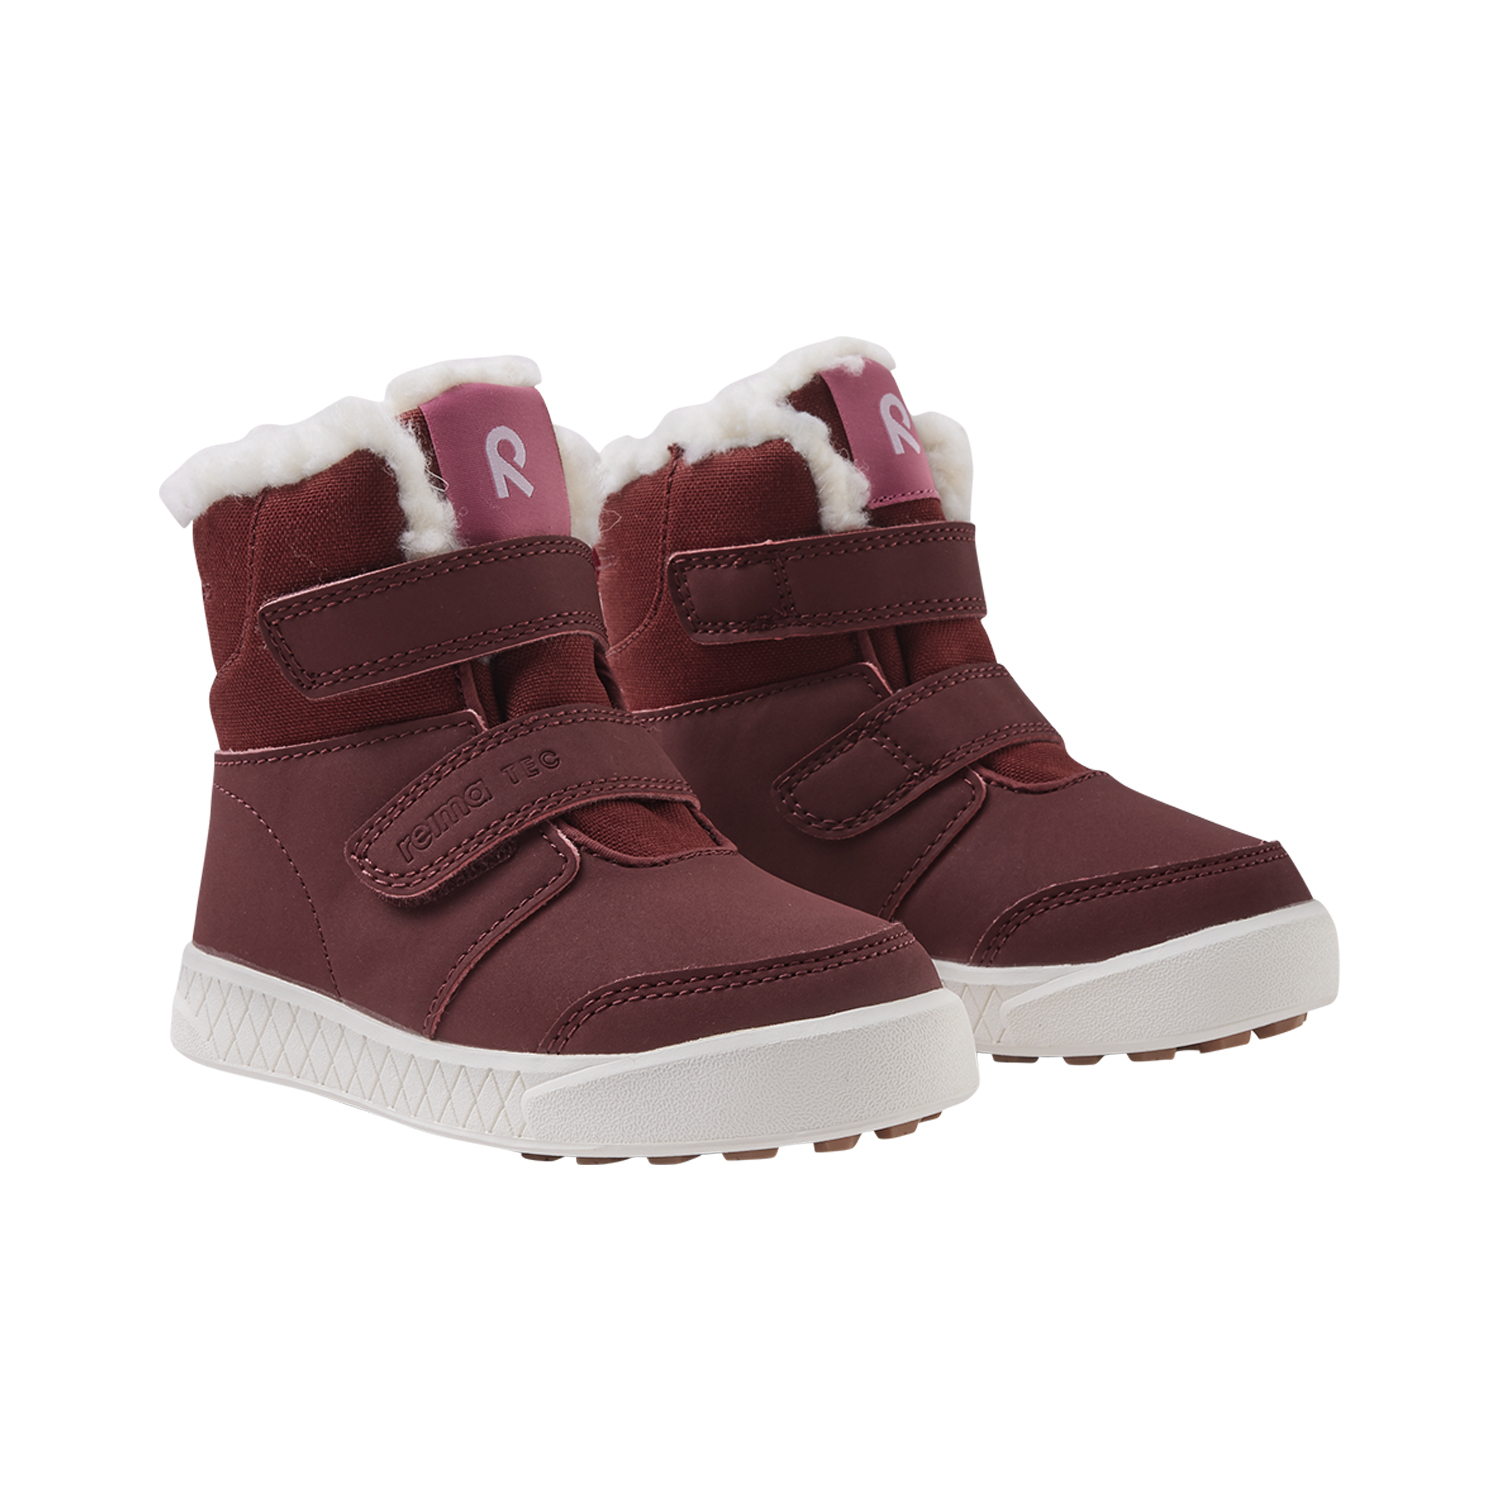 Zimowe buty dla dziecka Reima Pyrytys jam red - 32